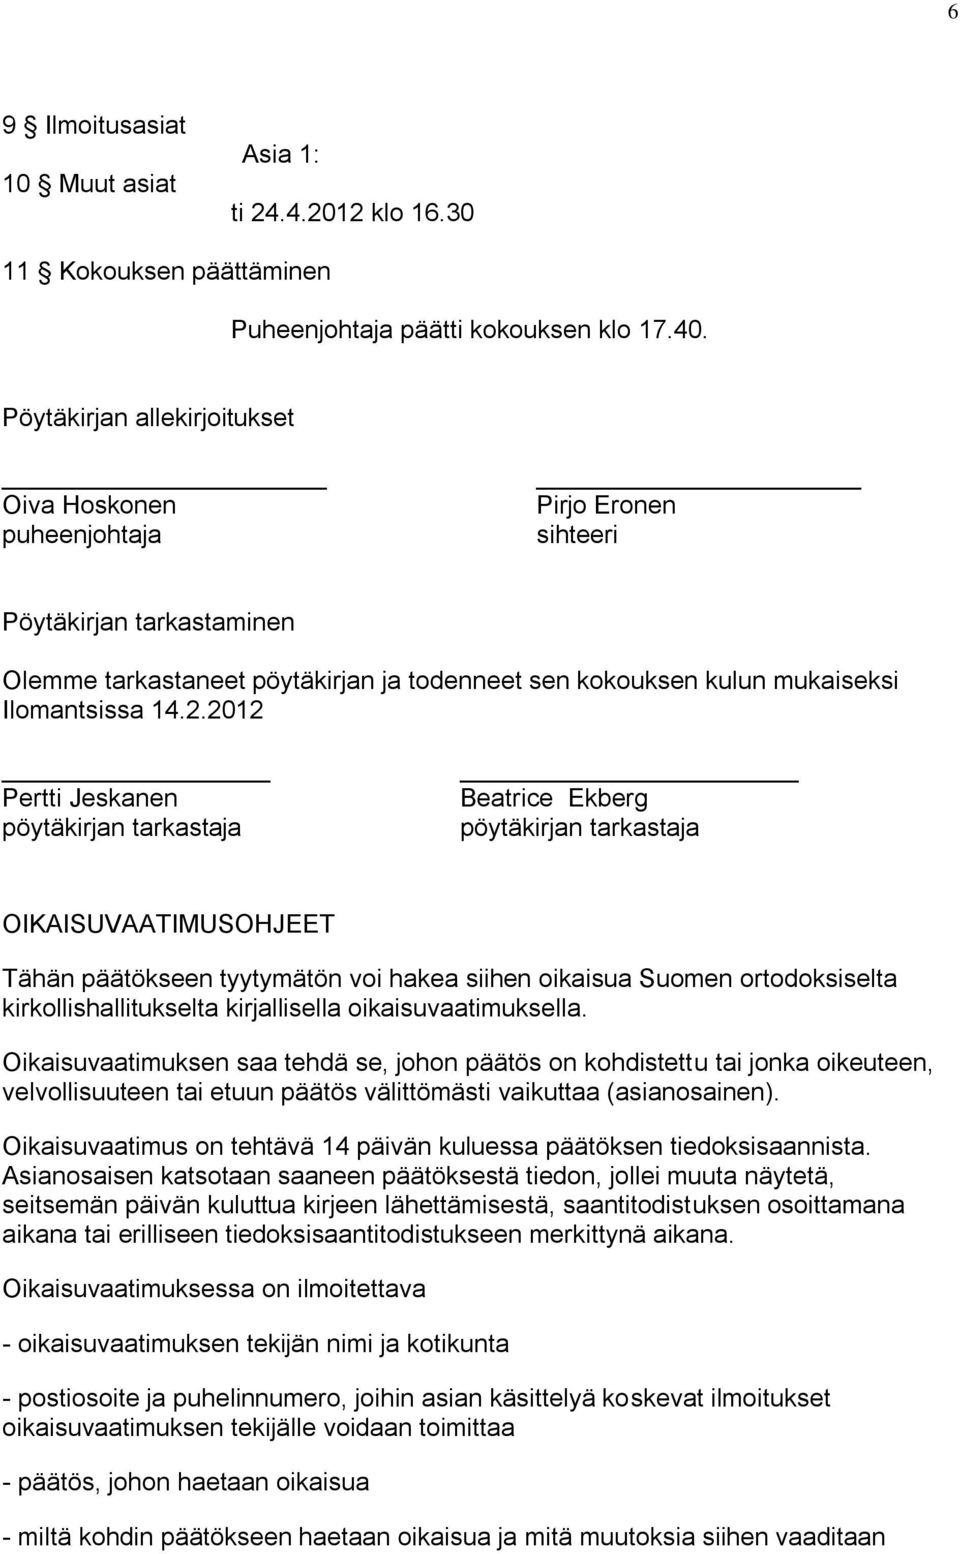 2012 Pertti Jeskanen pöytäkirjan tarkastaja Beatrice Ekberg pöytäkirjan tarkastaja OIKAISUVAATIMUSOHJEET Tähän päätökseen tyytymätön voi hakea siihen oikaisua Suomen ortodoksiselta